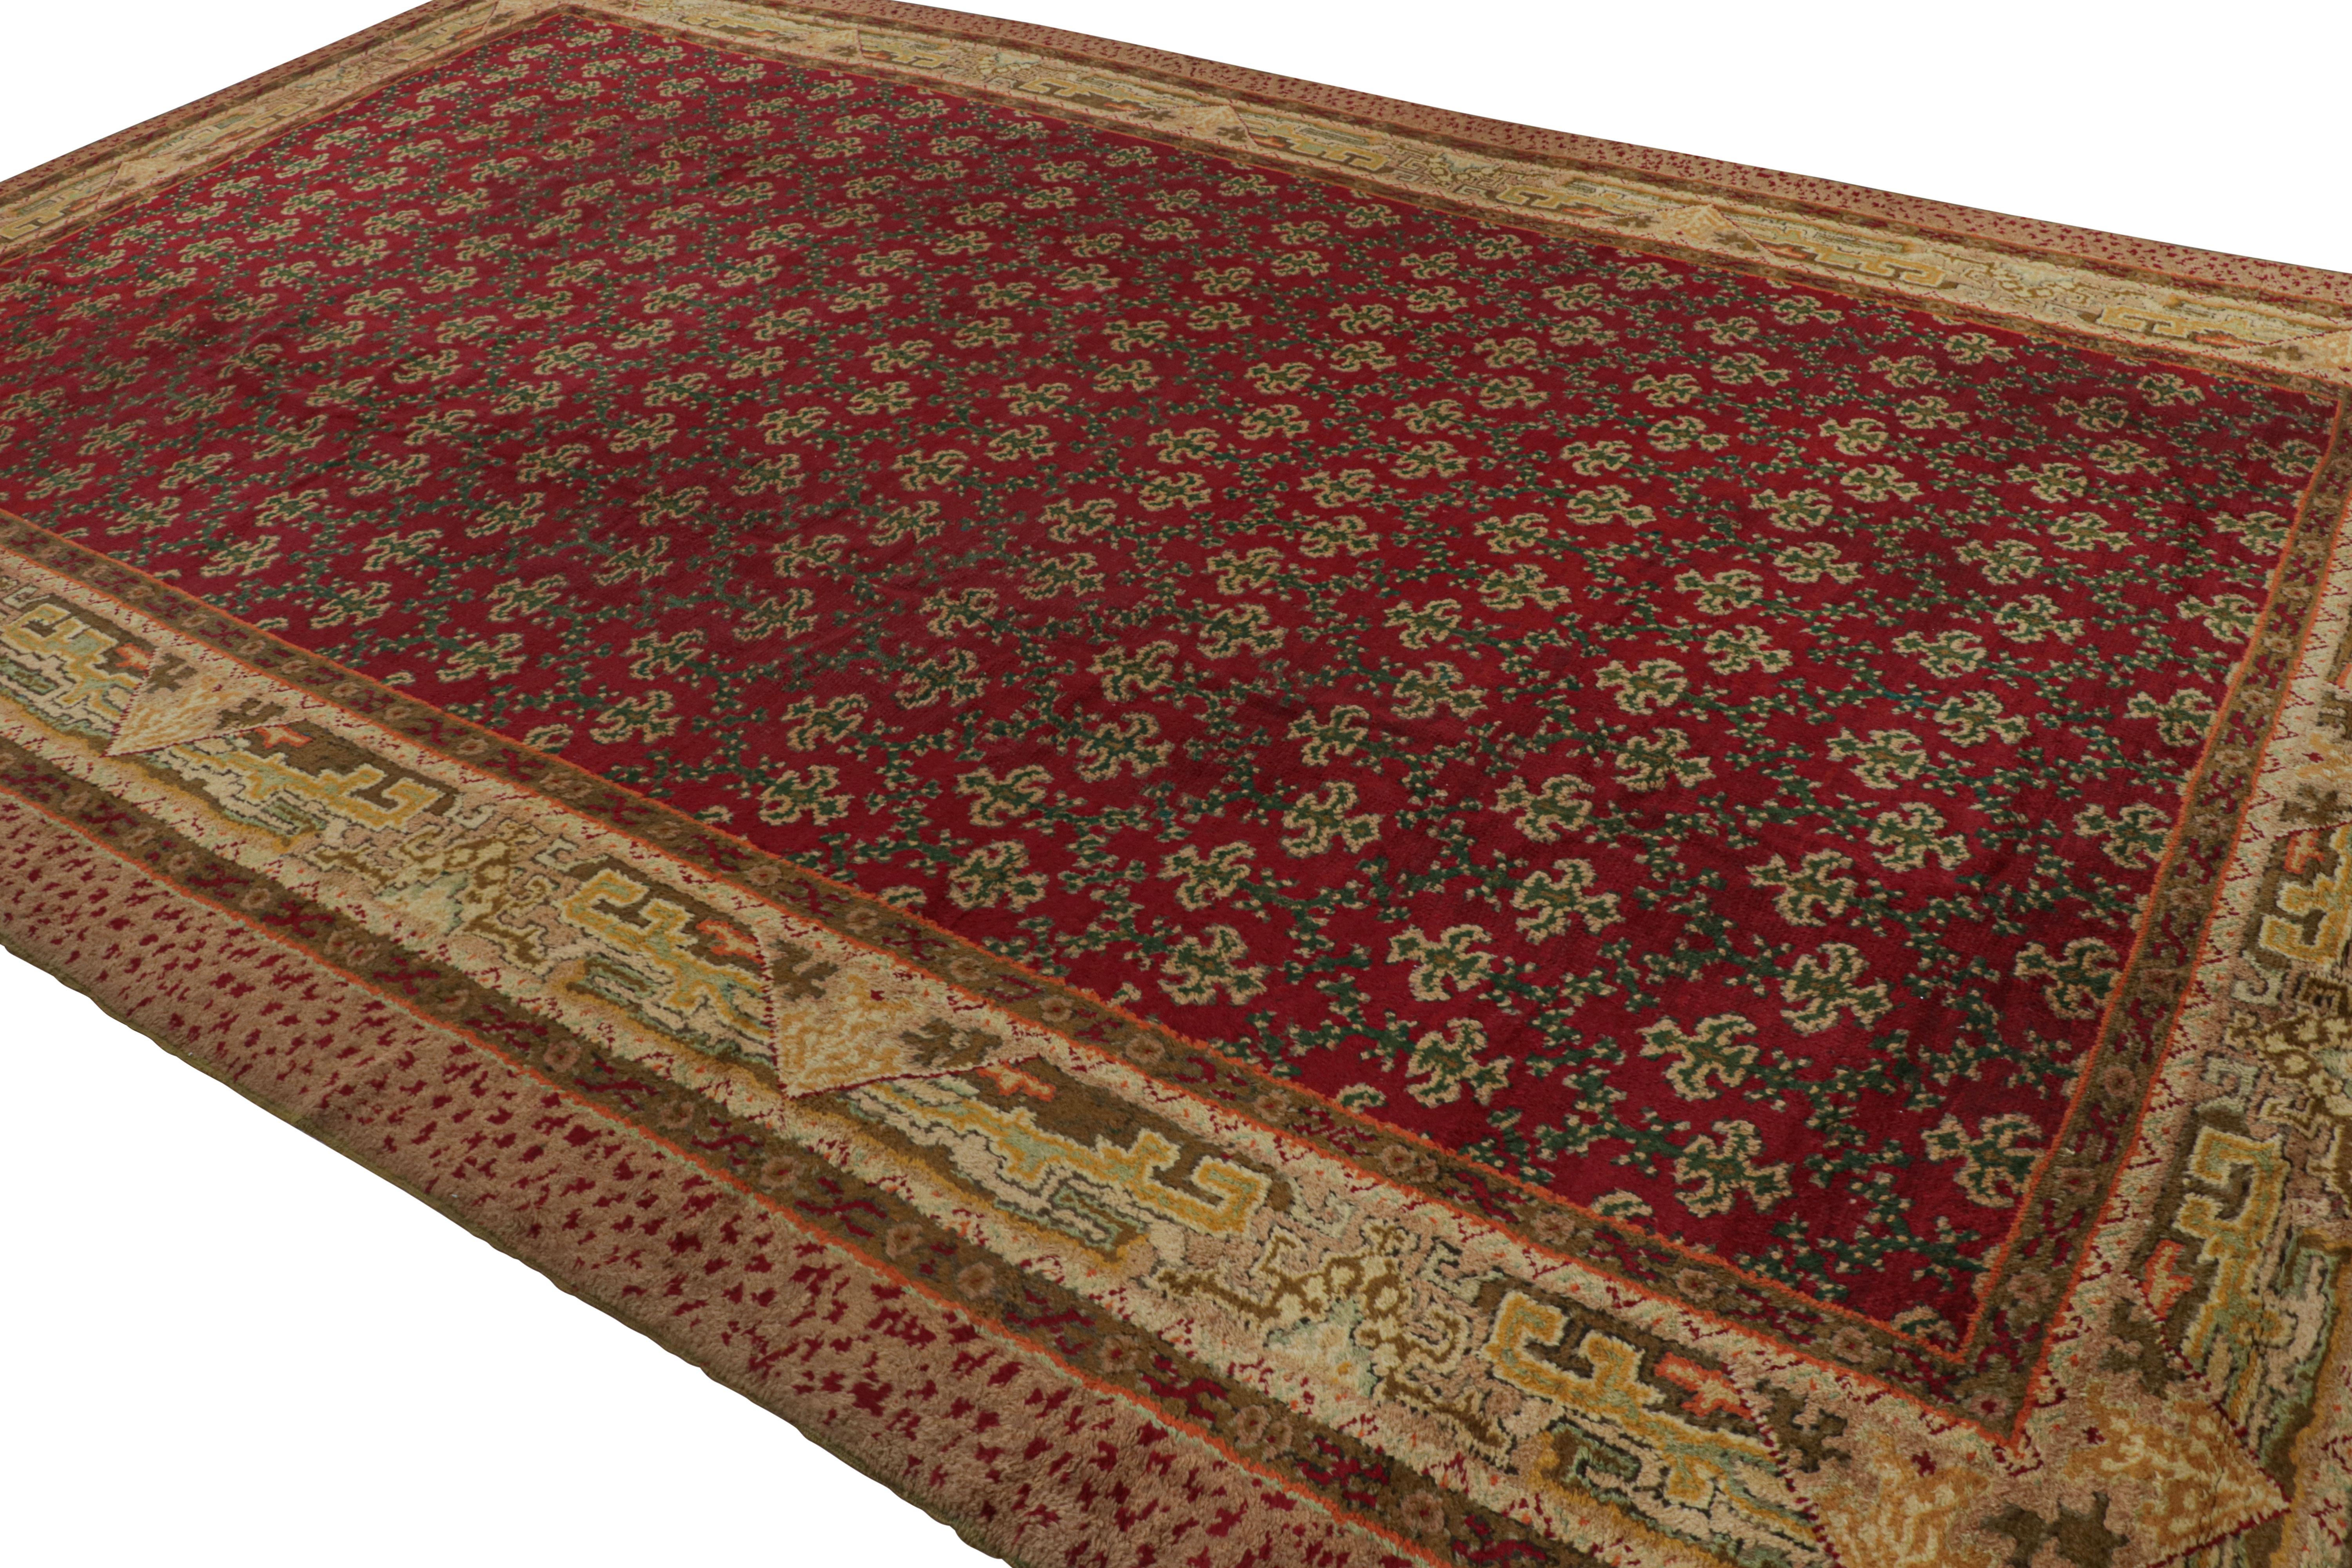 Noué à la main en laine, un tapis ancien 11x17 Antique Axminster circa 1920-1930 dernier né de notre collection d'antiquités.

Sur le Design :


Ici, le rouge riche souligne les motifs floraux verts dans le champ, tandis que les tons chartreuse et